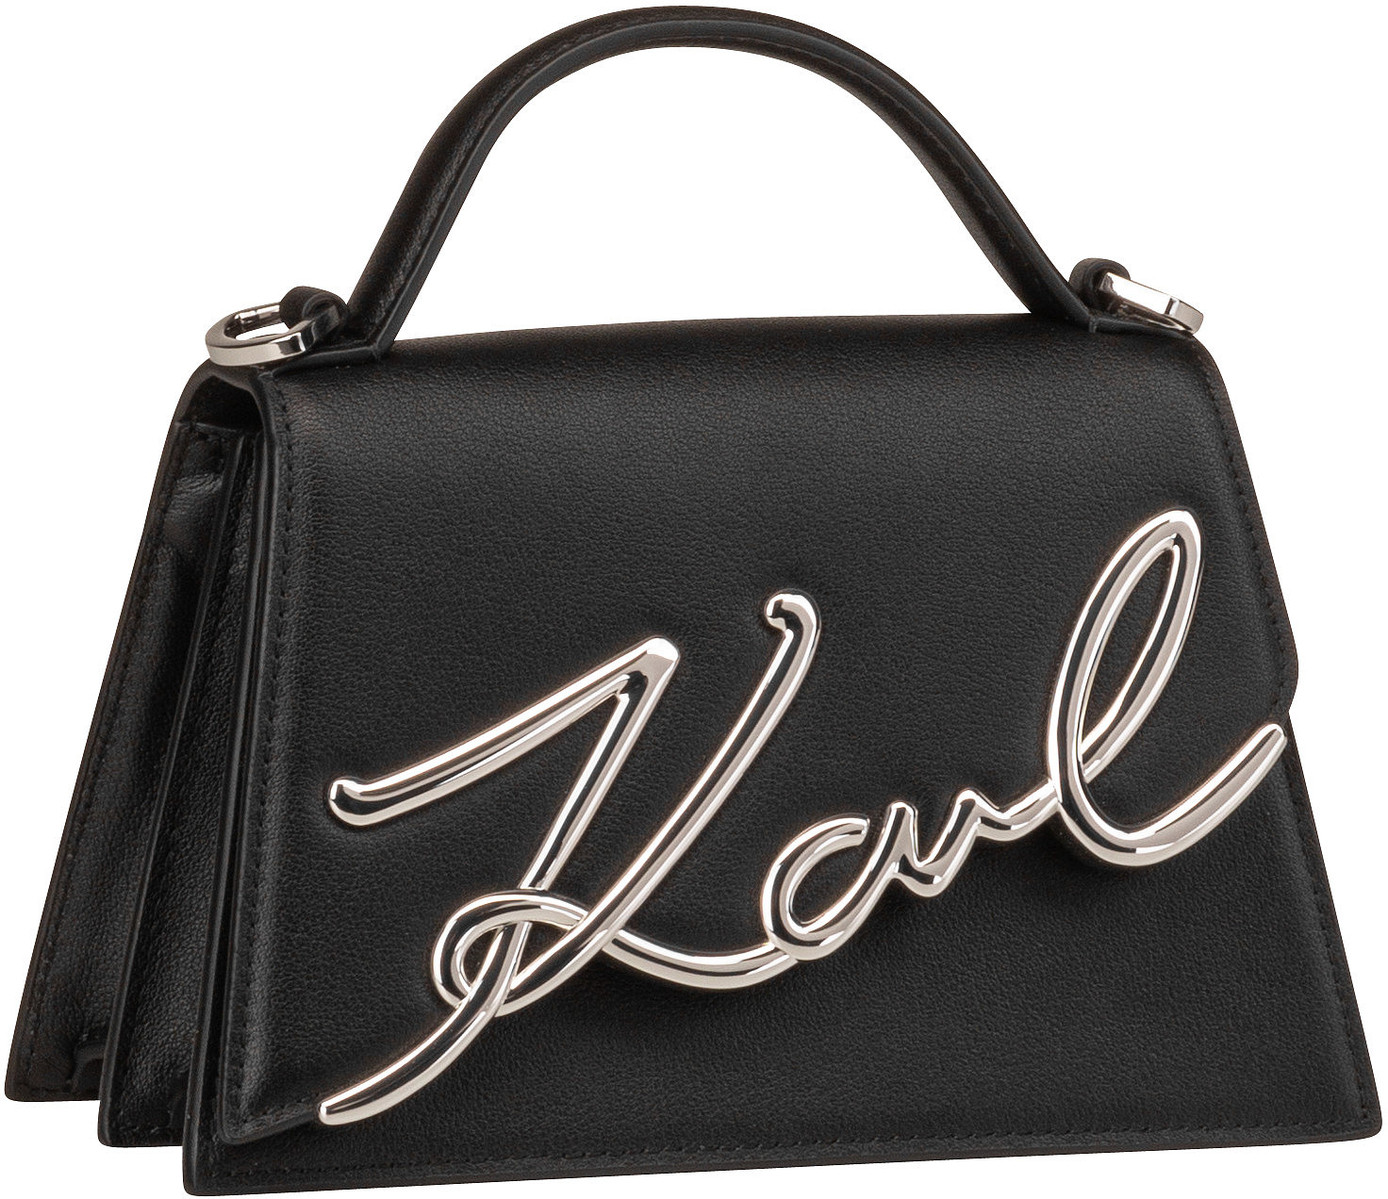 Karl Lagerfeld K/Signature 2.0 SM Crossbody  in Black/Nickel (3 Liter), Handtasche